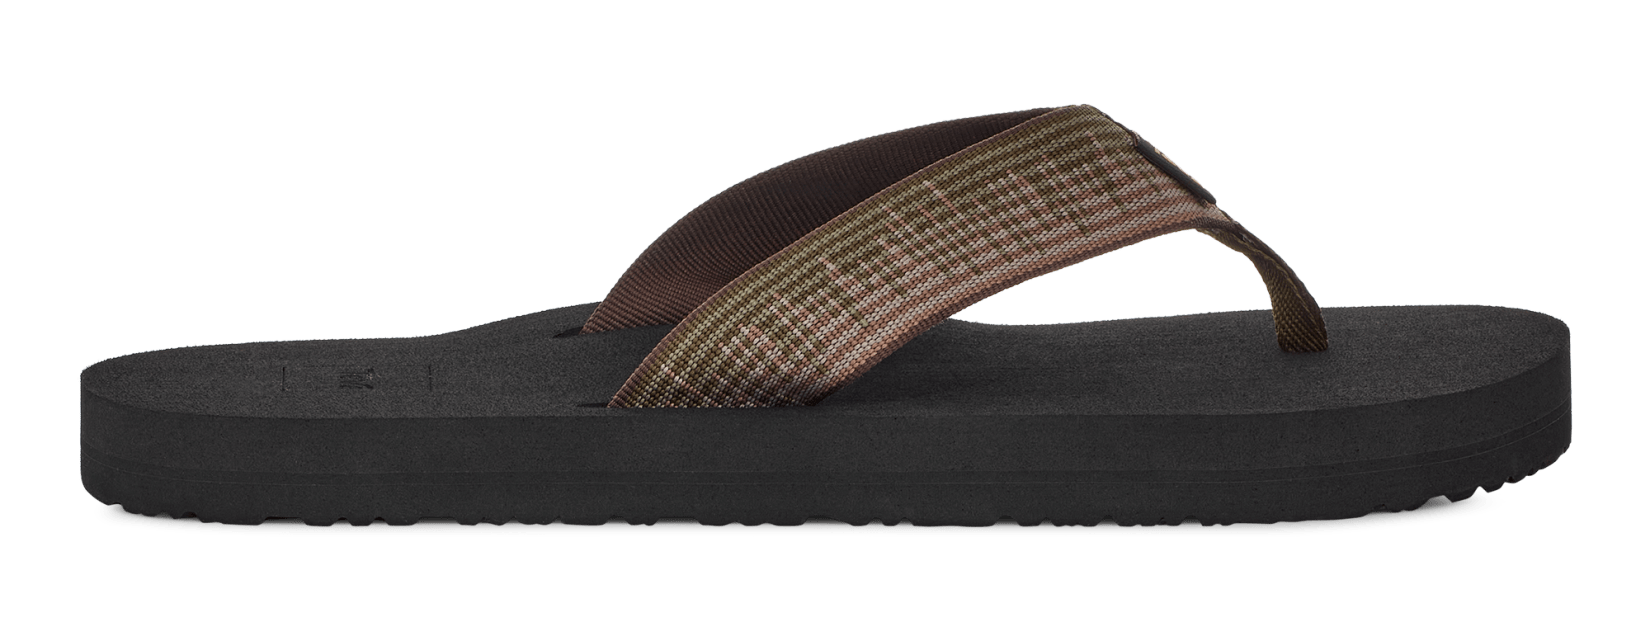 Teva® Mush for Men Comfortable Sandals at Teva.com